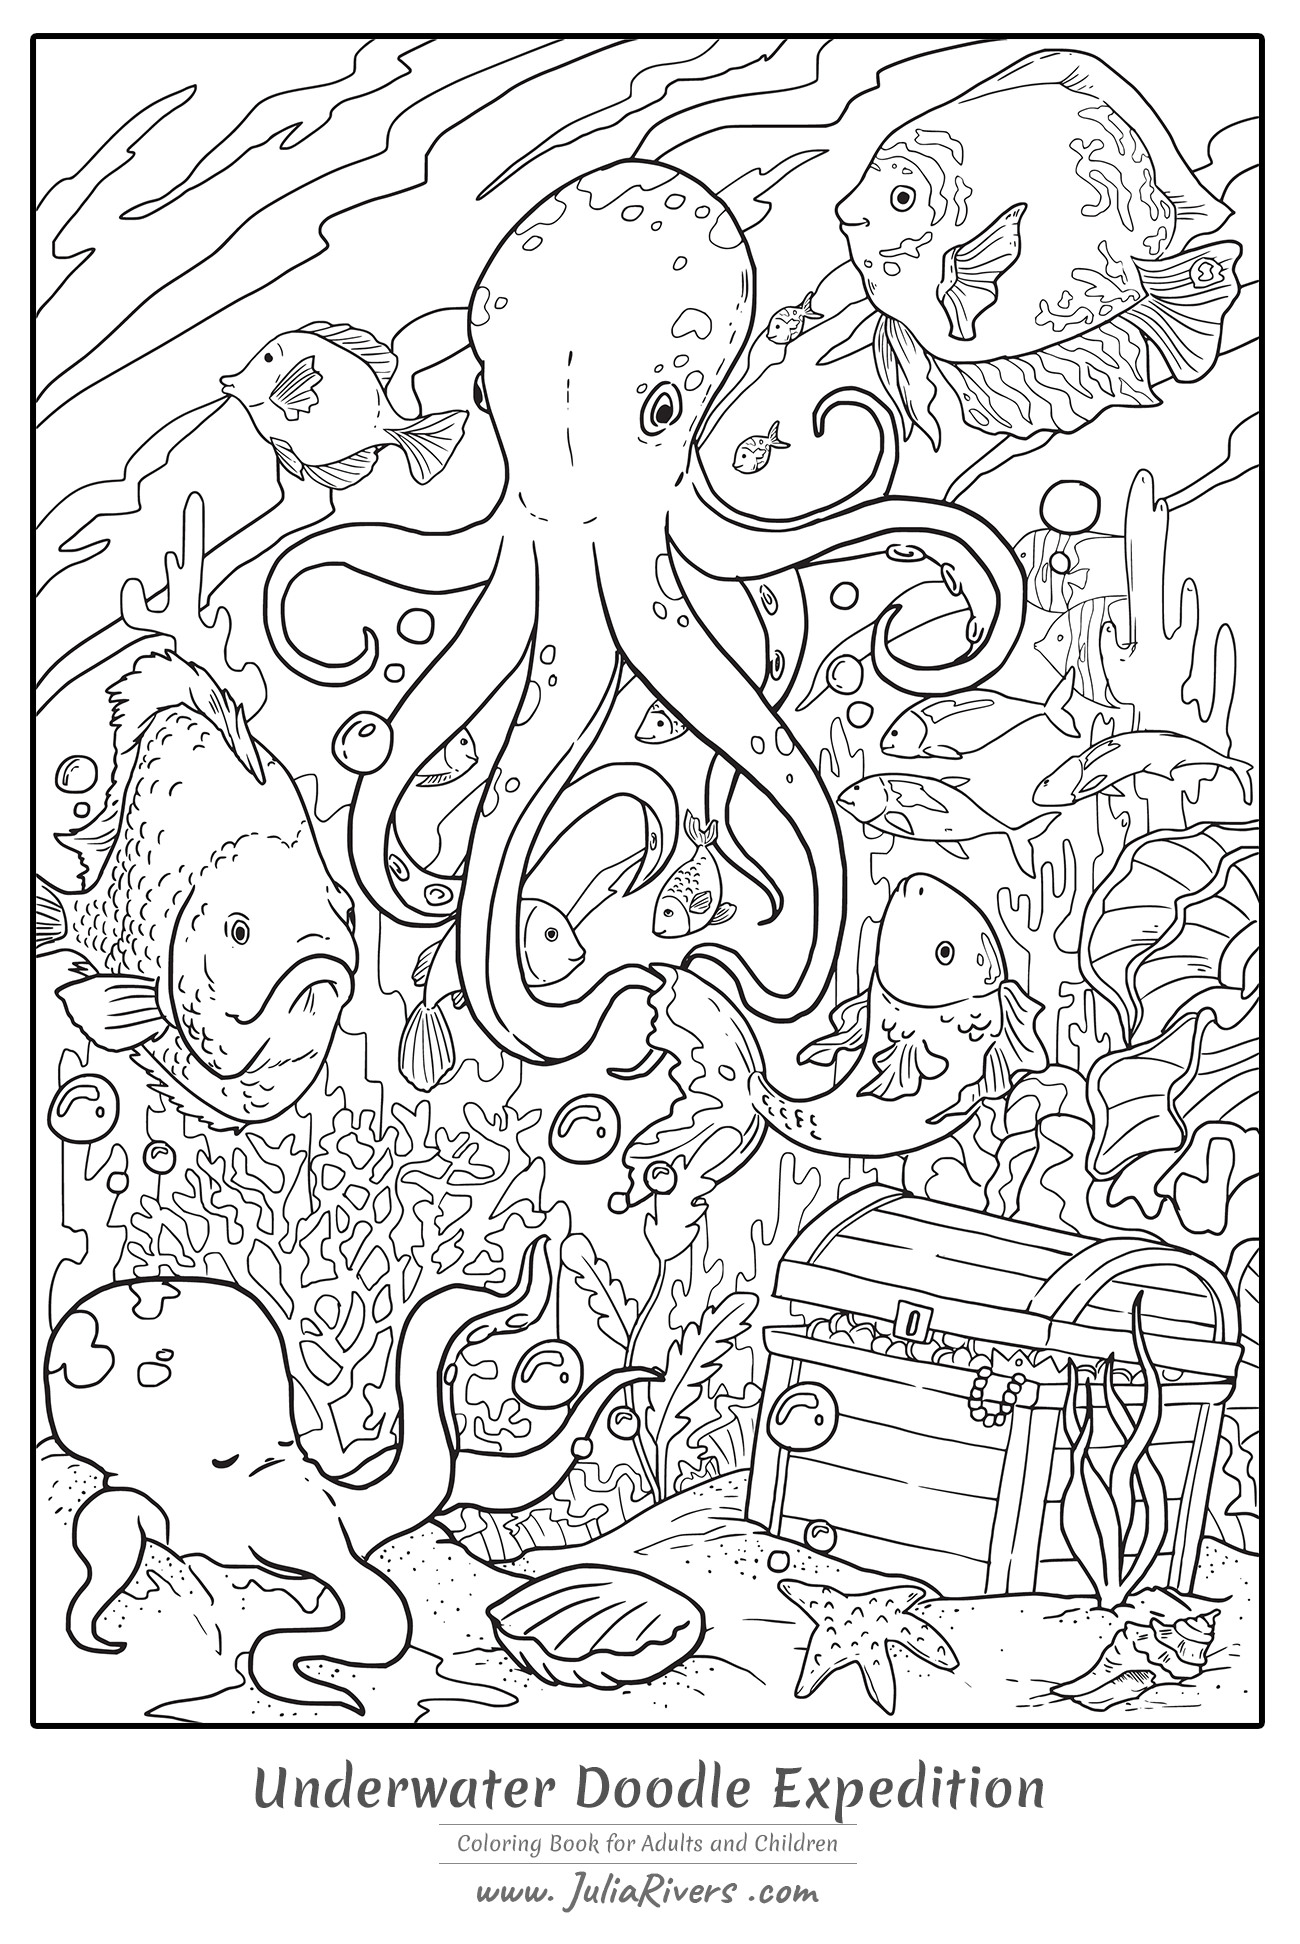 'Expedición submarina Doodle' : Magnífica página para colorear que representa un Pulpo gigante en el fondo del mar, con peces, corales y un misterioso tesoro.